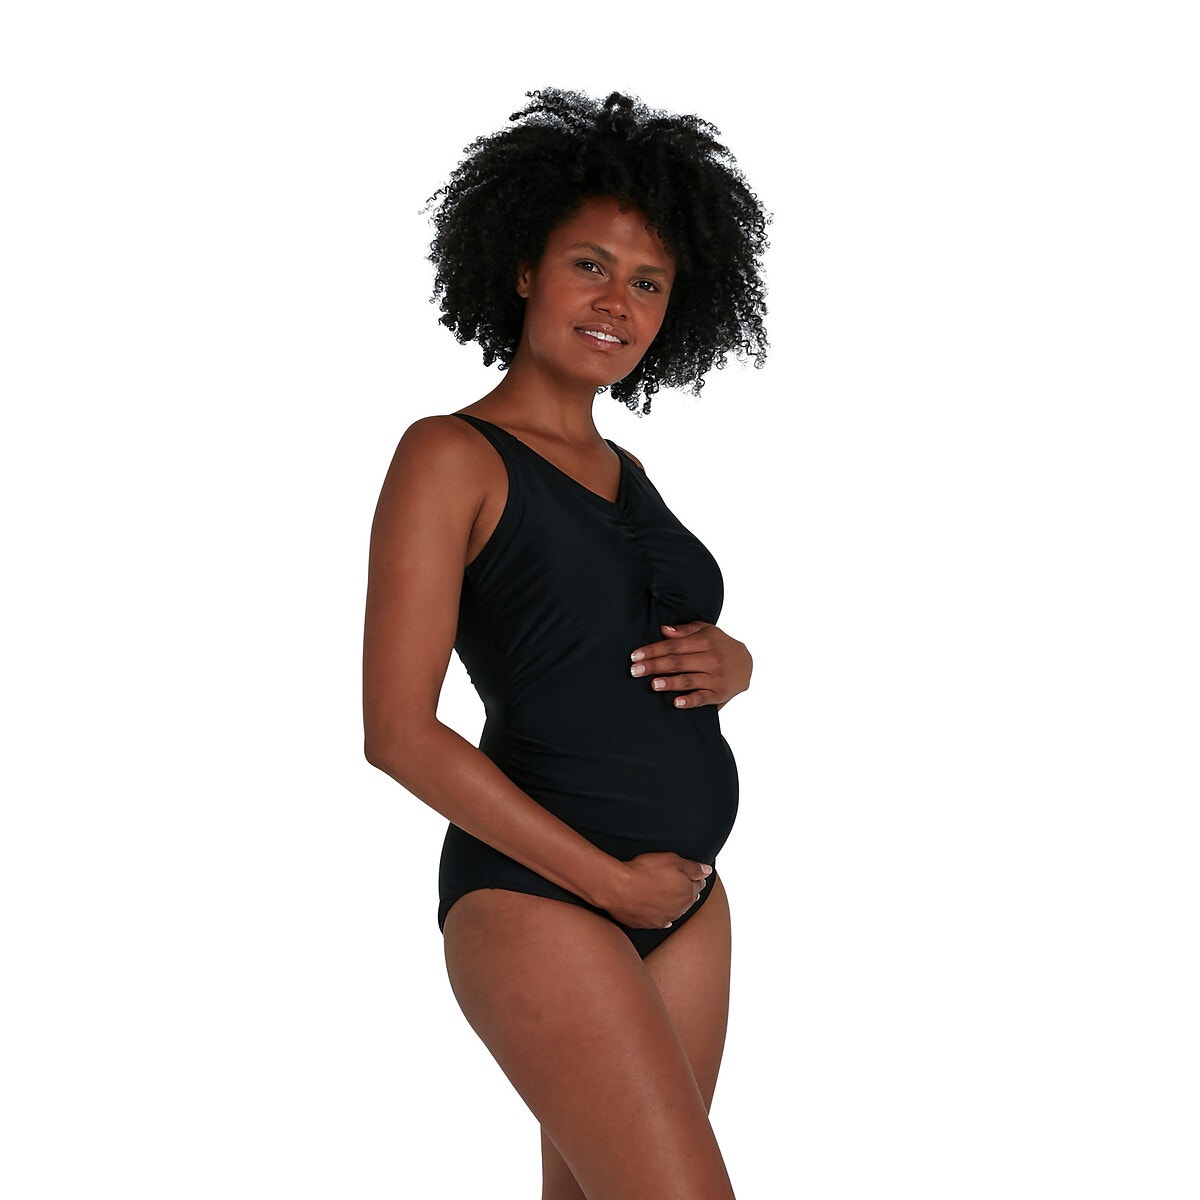 ΓΥΝΑΙΚΑ | Ρούχα Εγκυμοσύνης | Μαγιό | Ολόσωμα Ολόσωμο μαγιό εγκυμοσύνης για κολύμβηση